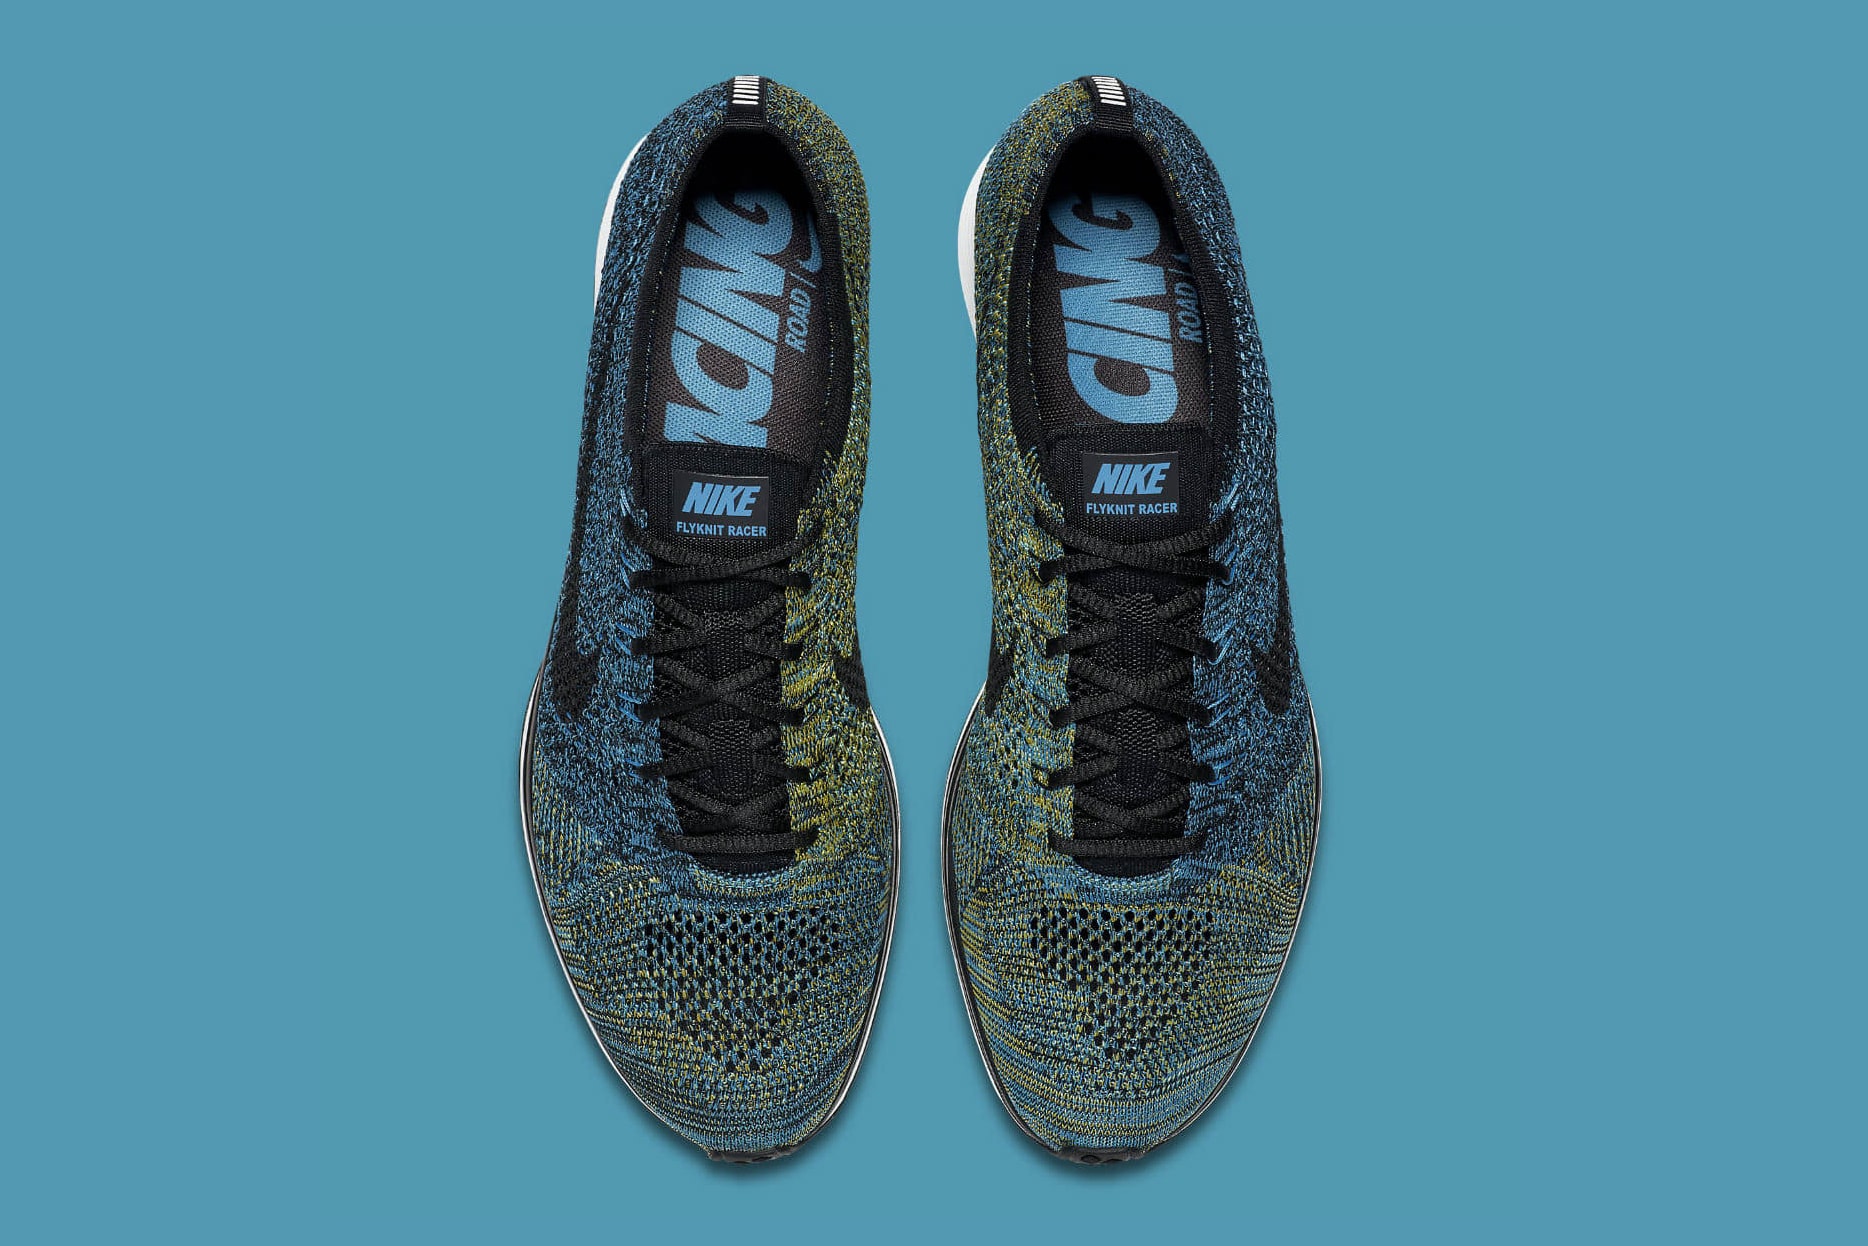 Nike Flyknit Racer "Blue Glow" Sneakers Swoosh